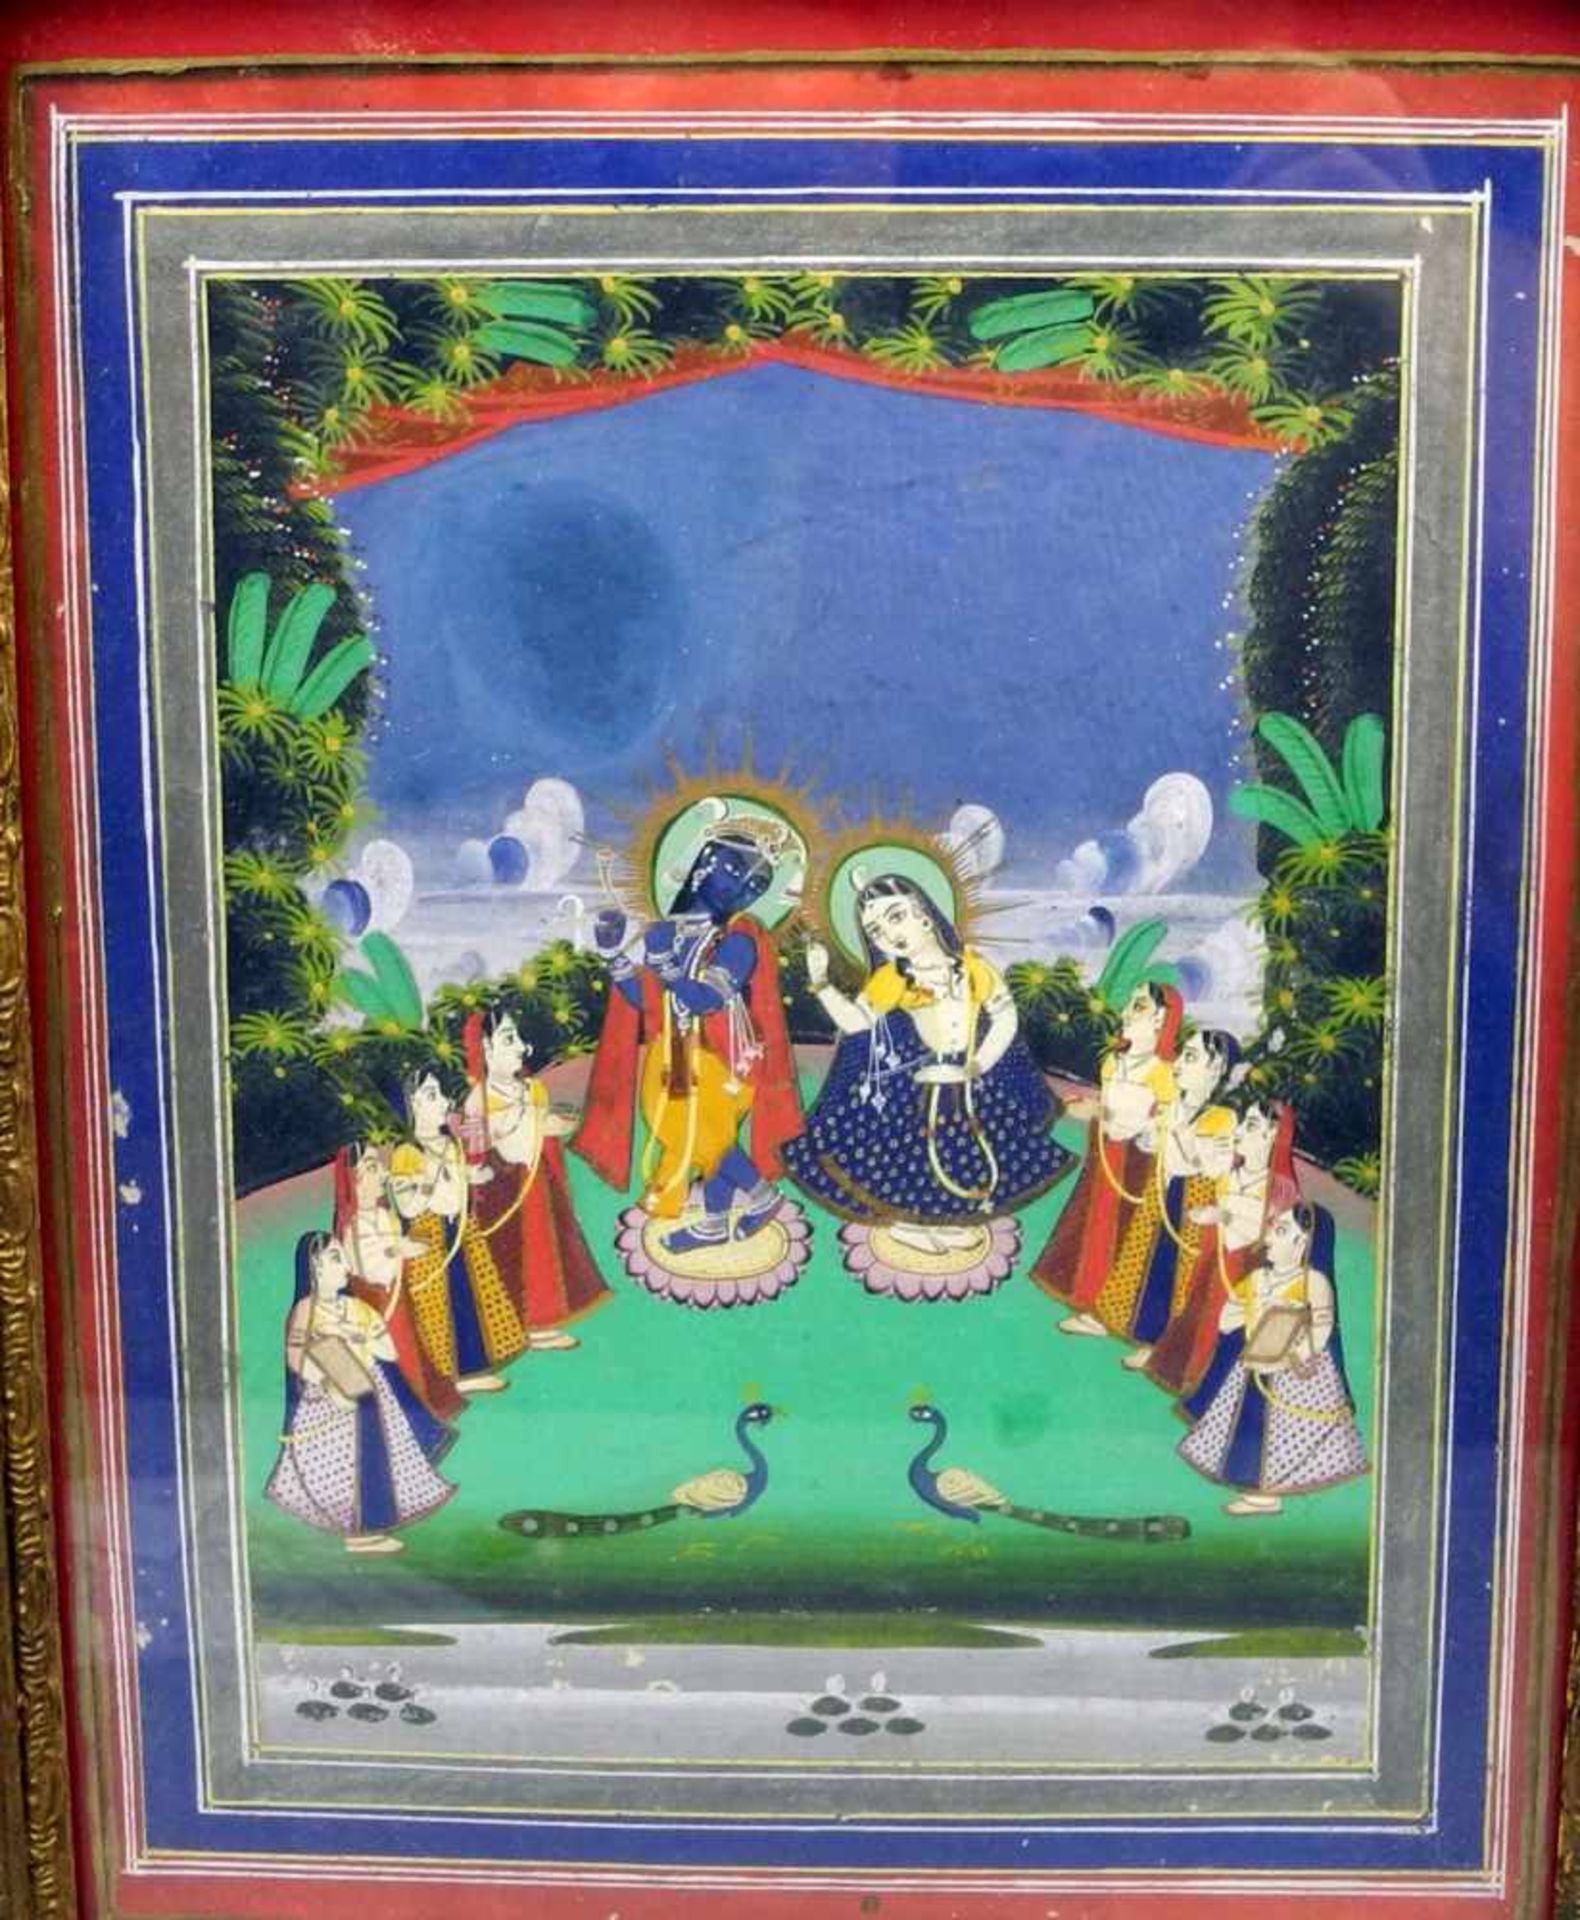 Indische HochzeitGouache/Papier. Farbenfrohe Darstellung eines indischen Hochzeitpaares mit Pfauen